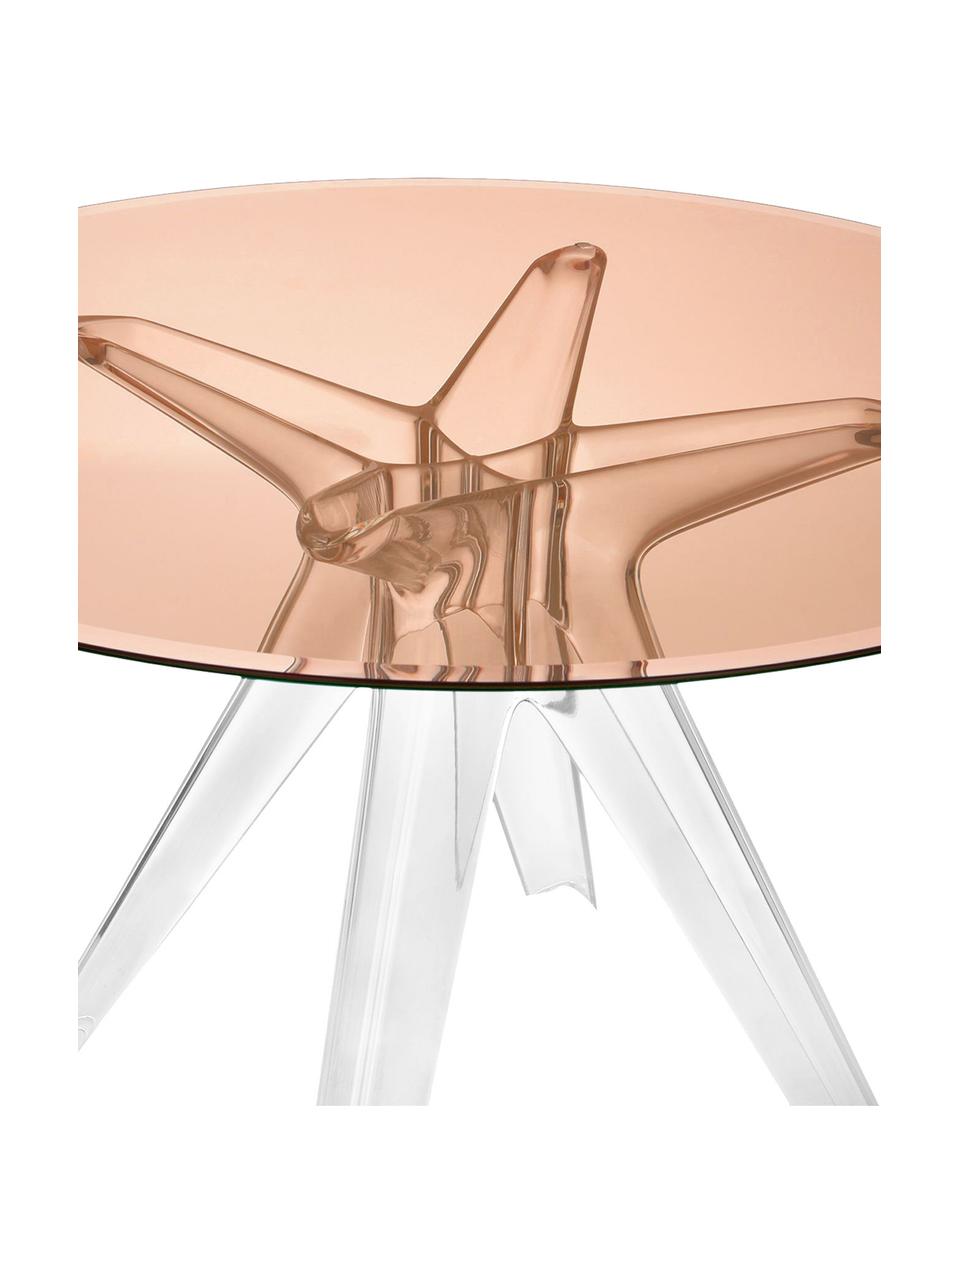 Stół do jadalni Sir Gio, Blat: szkło laminowane, Stelaż: tworzywo sztuczne, Blady różowy, transparentny, Ø 120 x W 72 cm